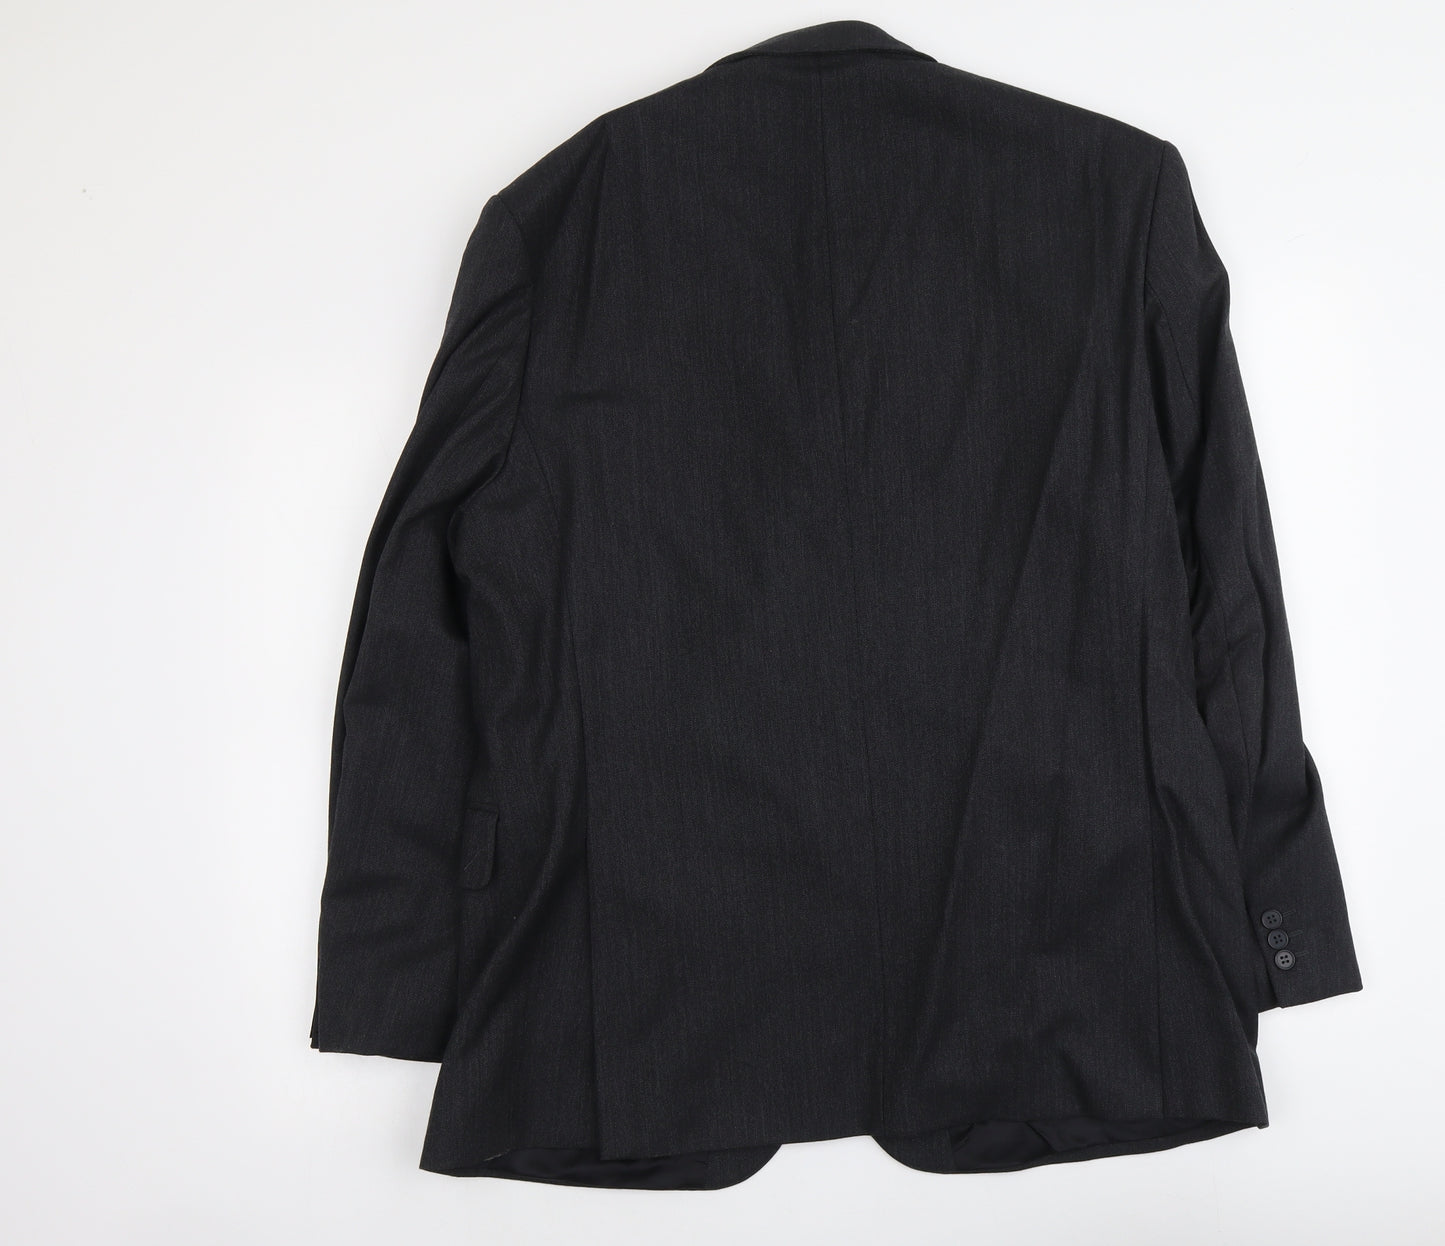 Marks and Spencer Mens Grey Wool Jacket Suit Jacket Size L Regular